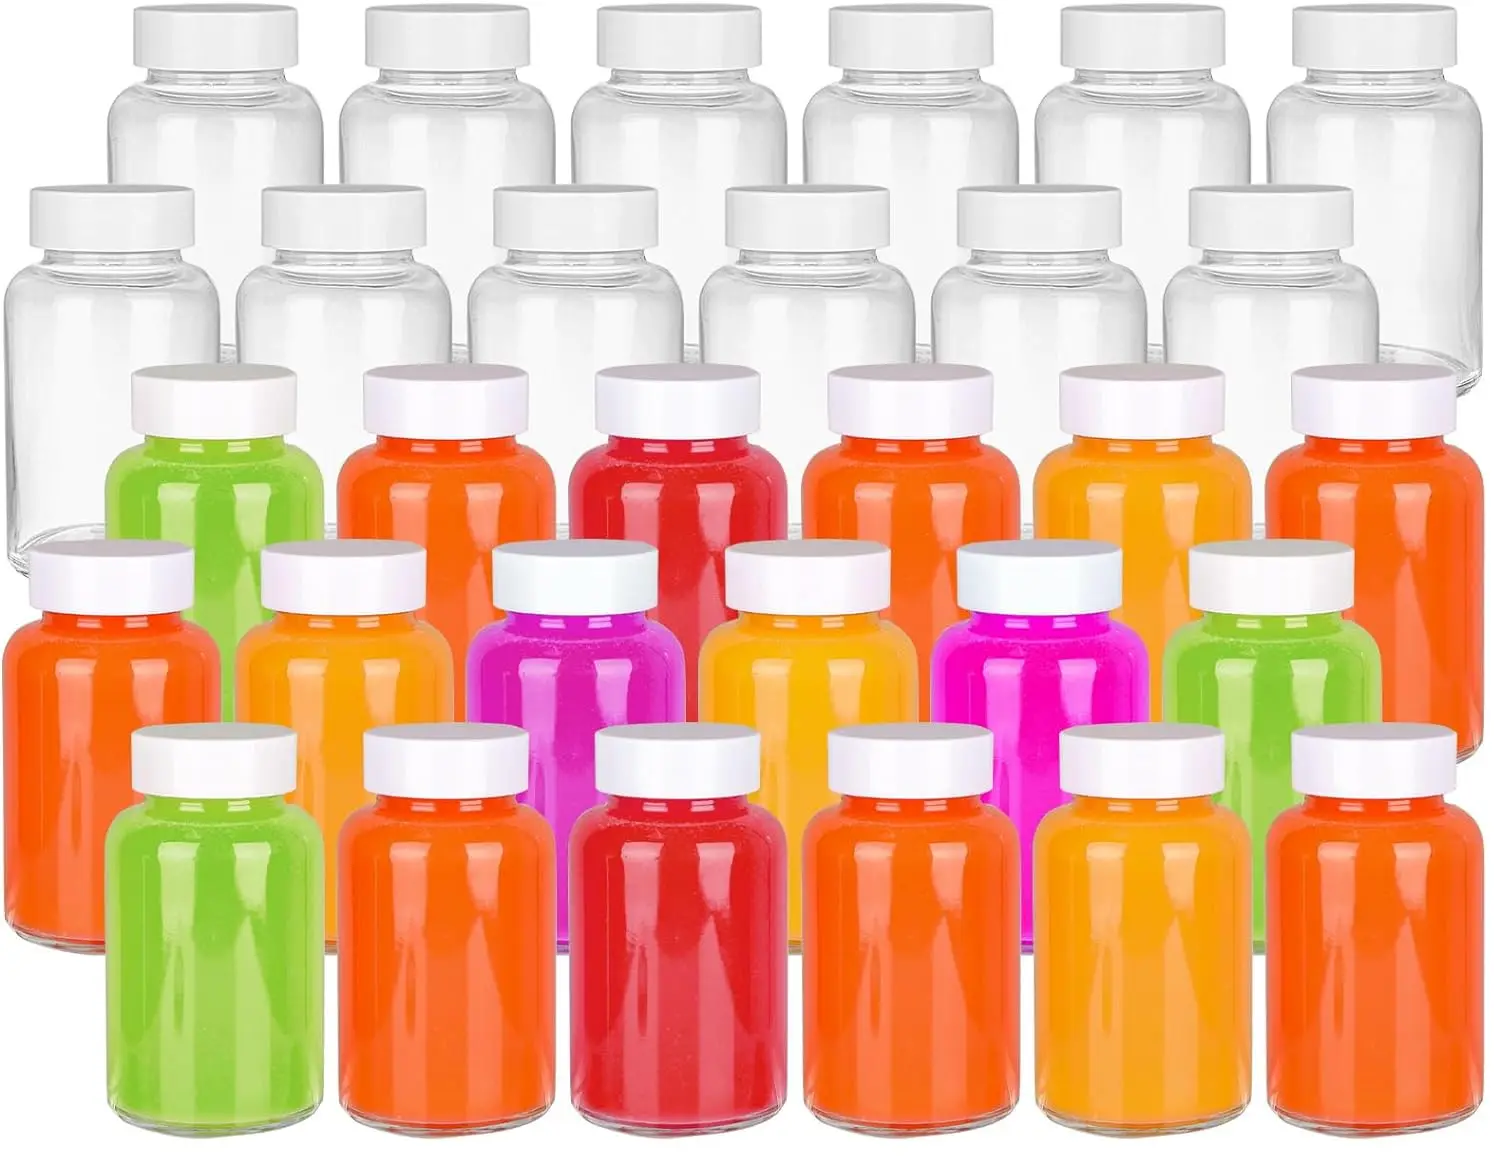 Yeniden kullanılabilir şeffaf cam şişeler 120 ML boş sağlık suyu atış şişeleri 4 OZ cam atış şişeleri suyu için